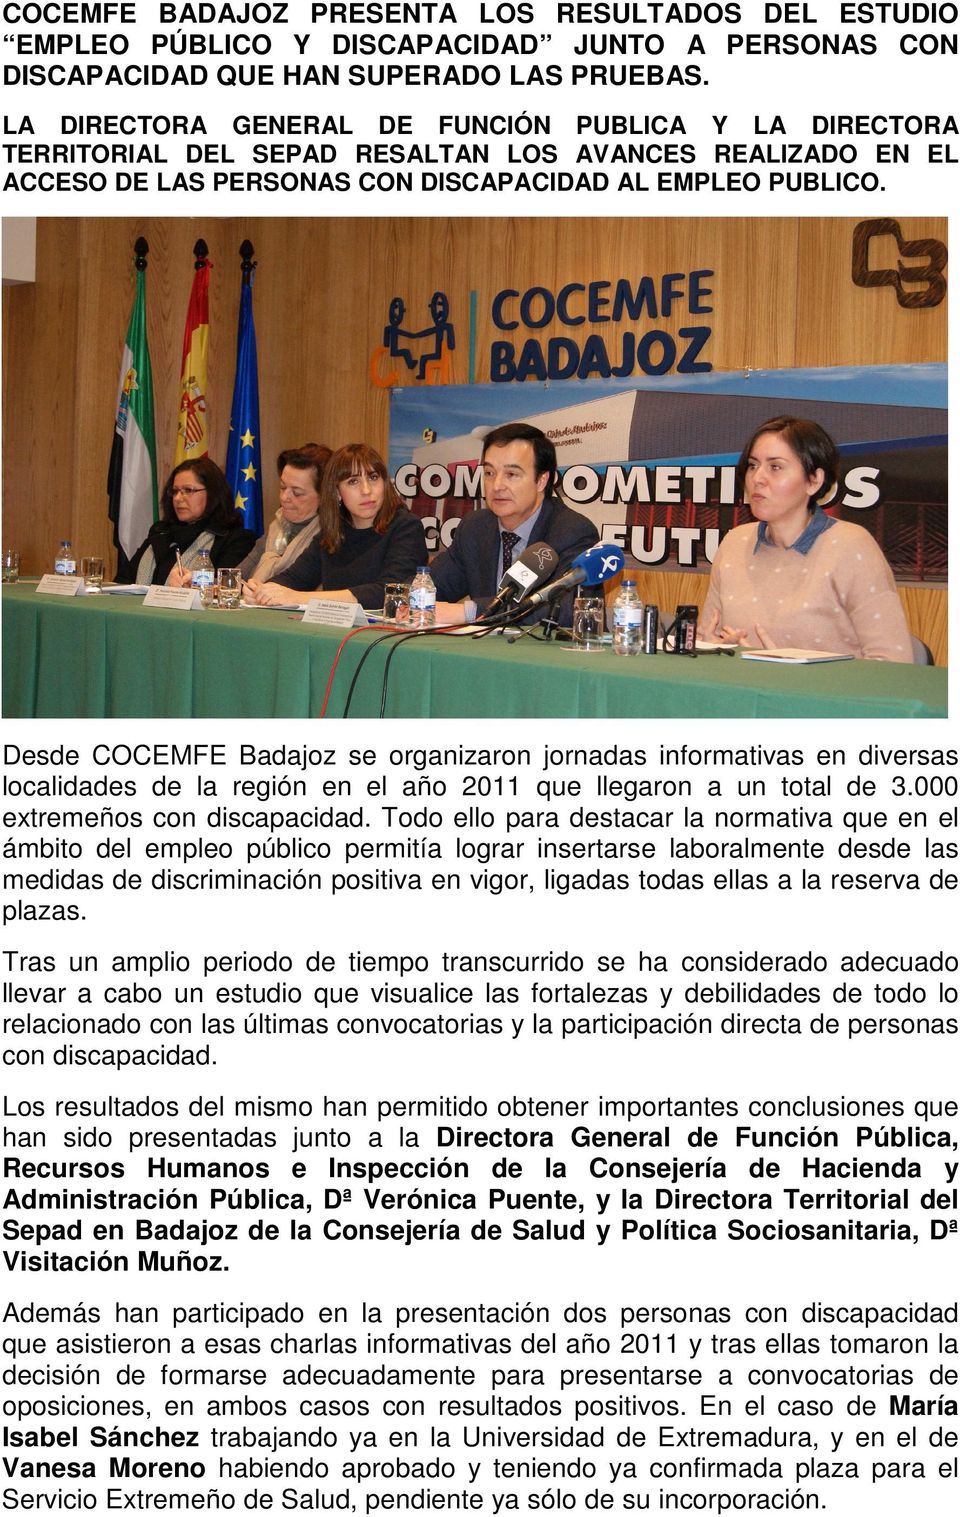 Desde COCEMFE Badajoz se organizaron jornadas informativas en diversas localidades de la región en el año 2011 que llegaron a un total de 3.000 extremeños con discapacidad.